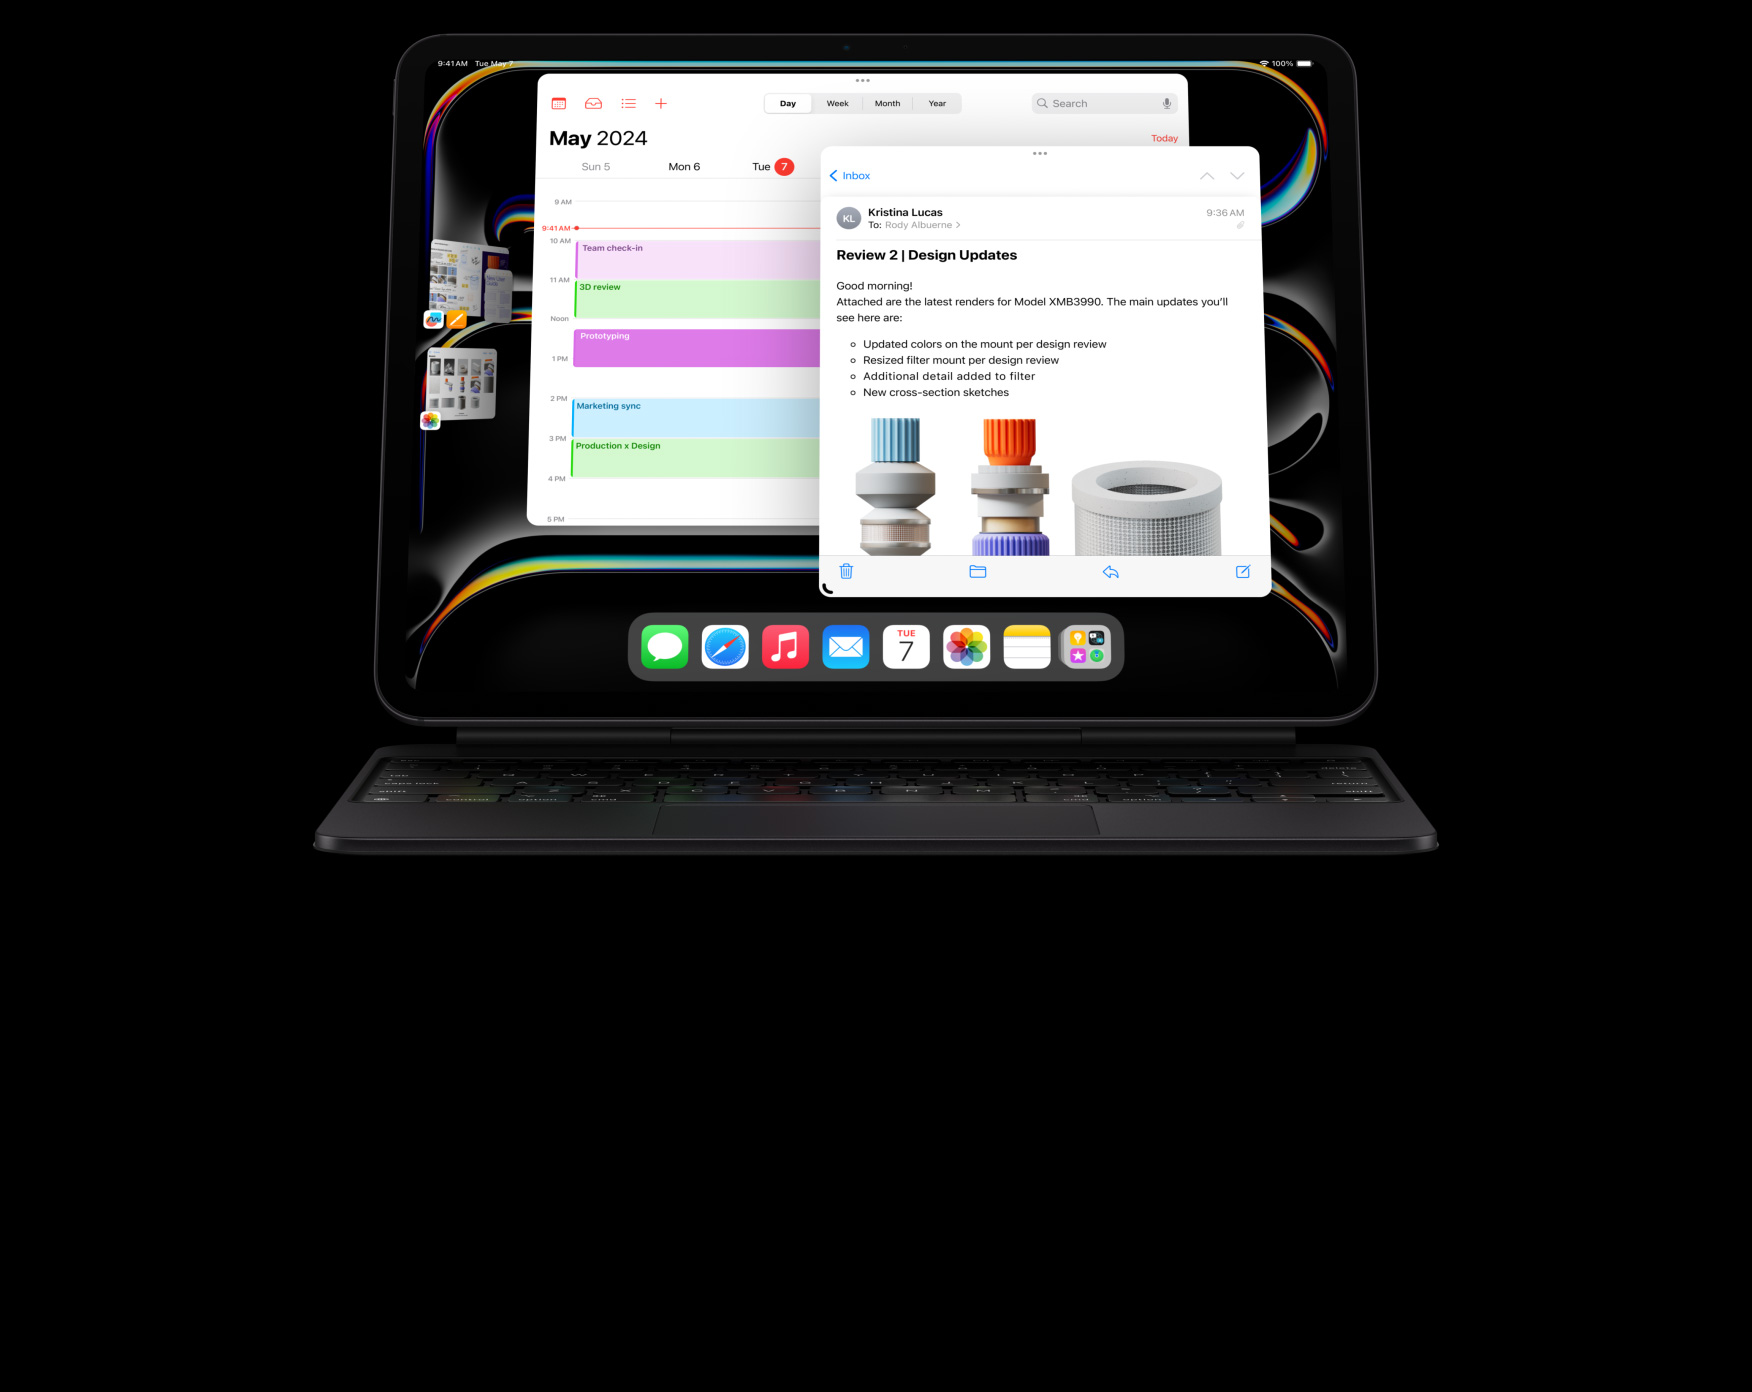 iPad Pro fixé à un Magic Keyboard en mode paysage, la personne utilisatrice utilise plusieurs apps à la fois